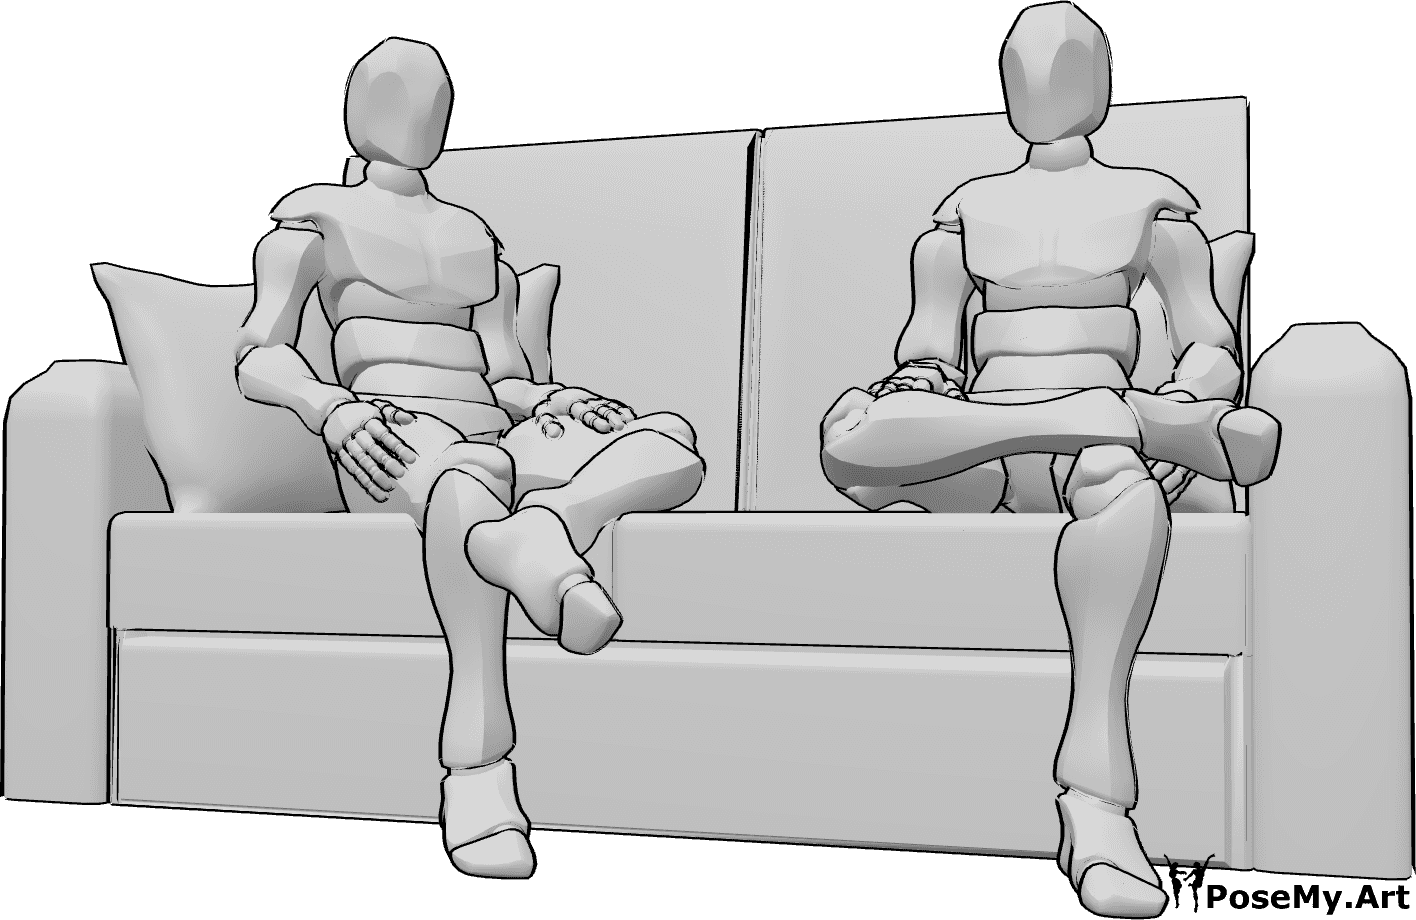 Referência de poses- Homens em pose sentada - Dois homens estão sentados no sofá casualmente e olham para a frente